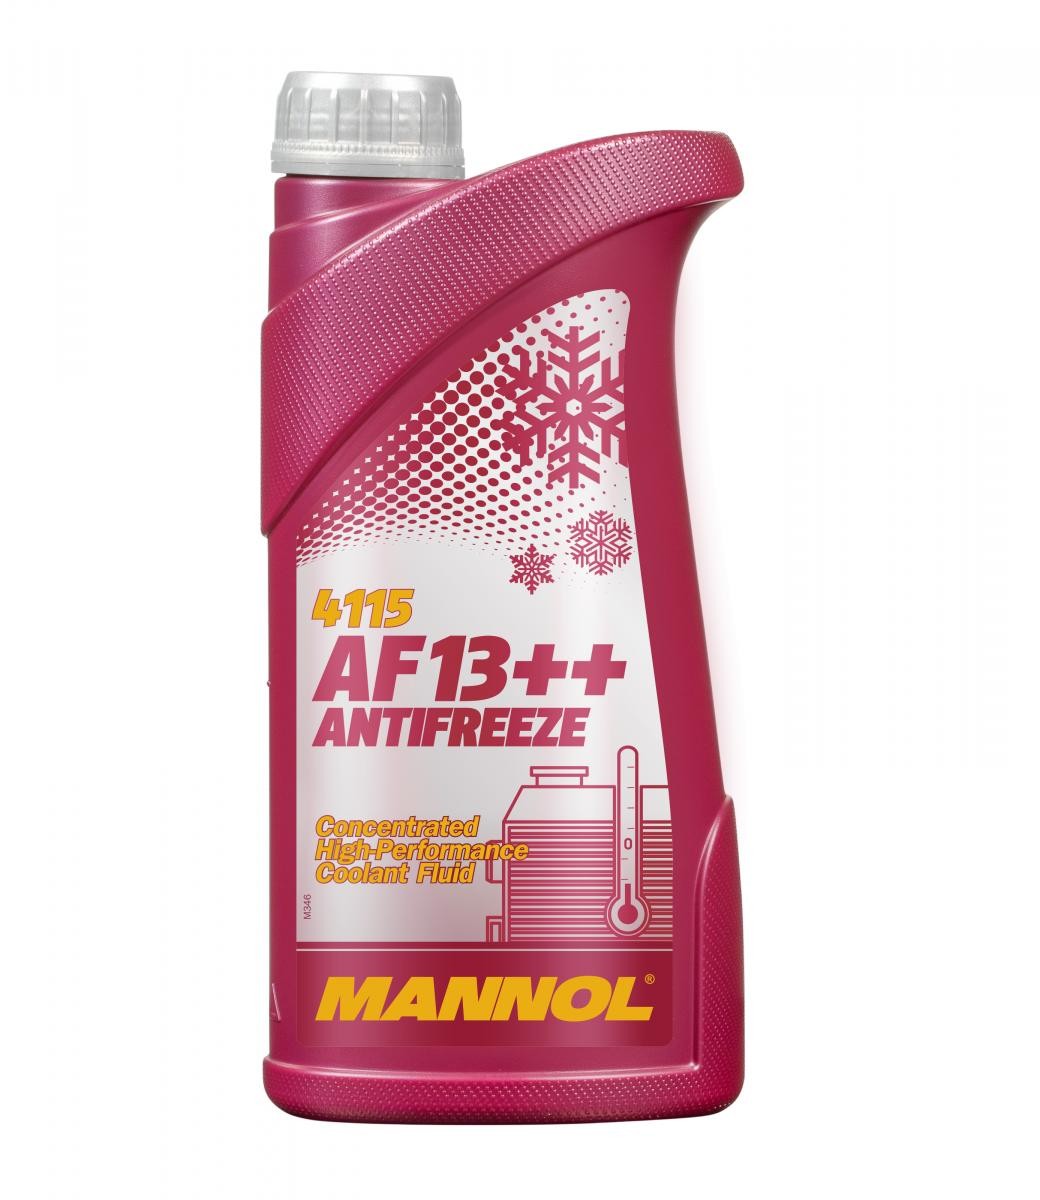 ADLY SUPERSONIC Kühlmittel G12 Rot, 1l, -38(50/50) MANNOL AF13++, High-performance MN4115-1